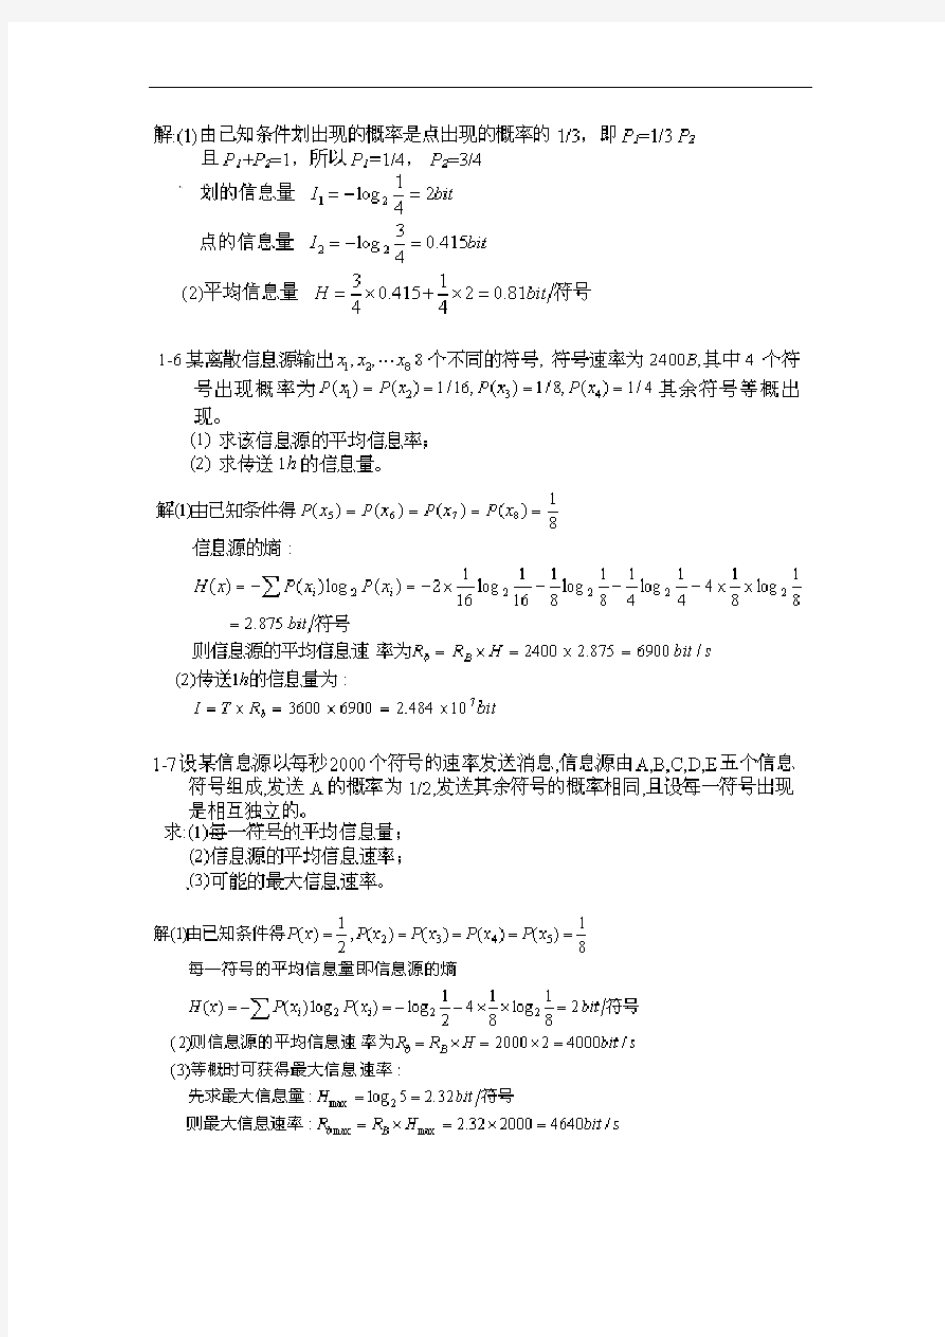 通信原理第六版樊昌信课后问题详解完整版 (1)